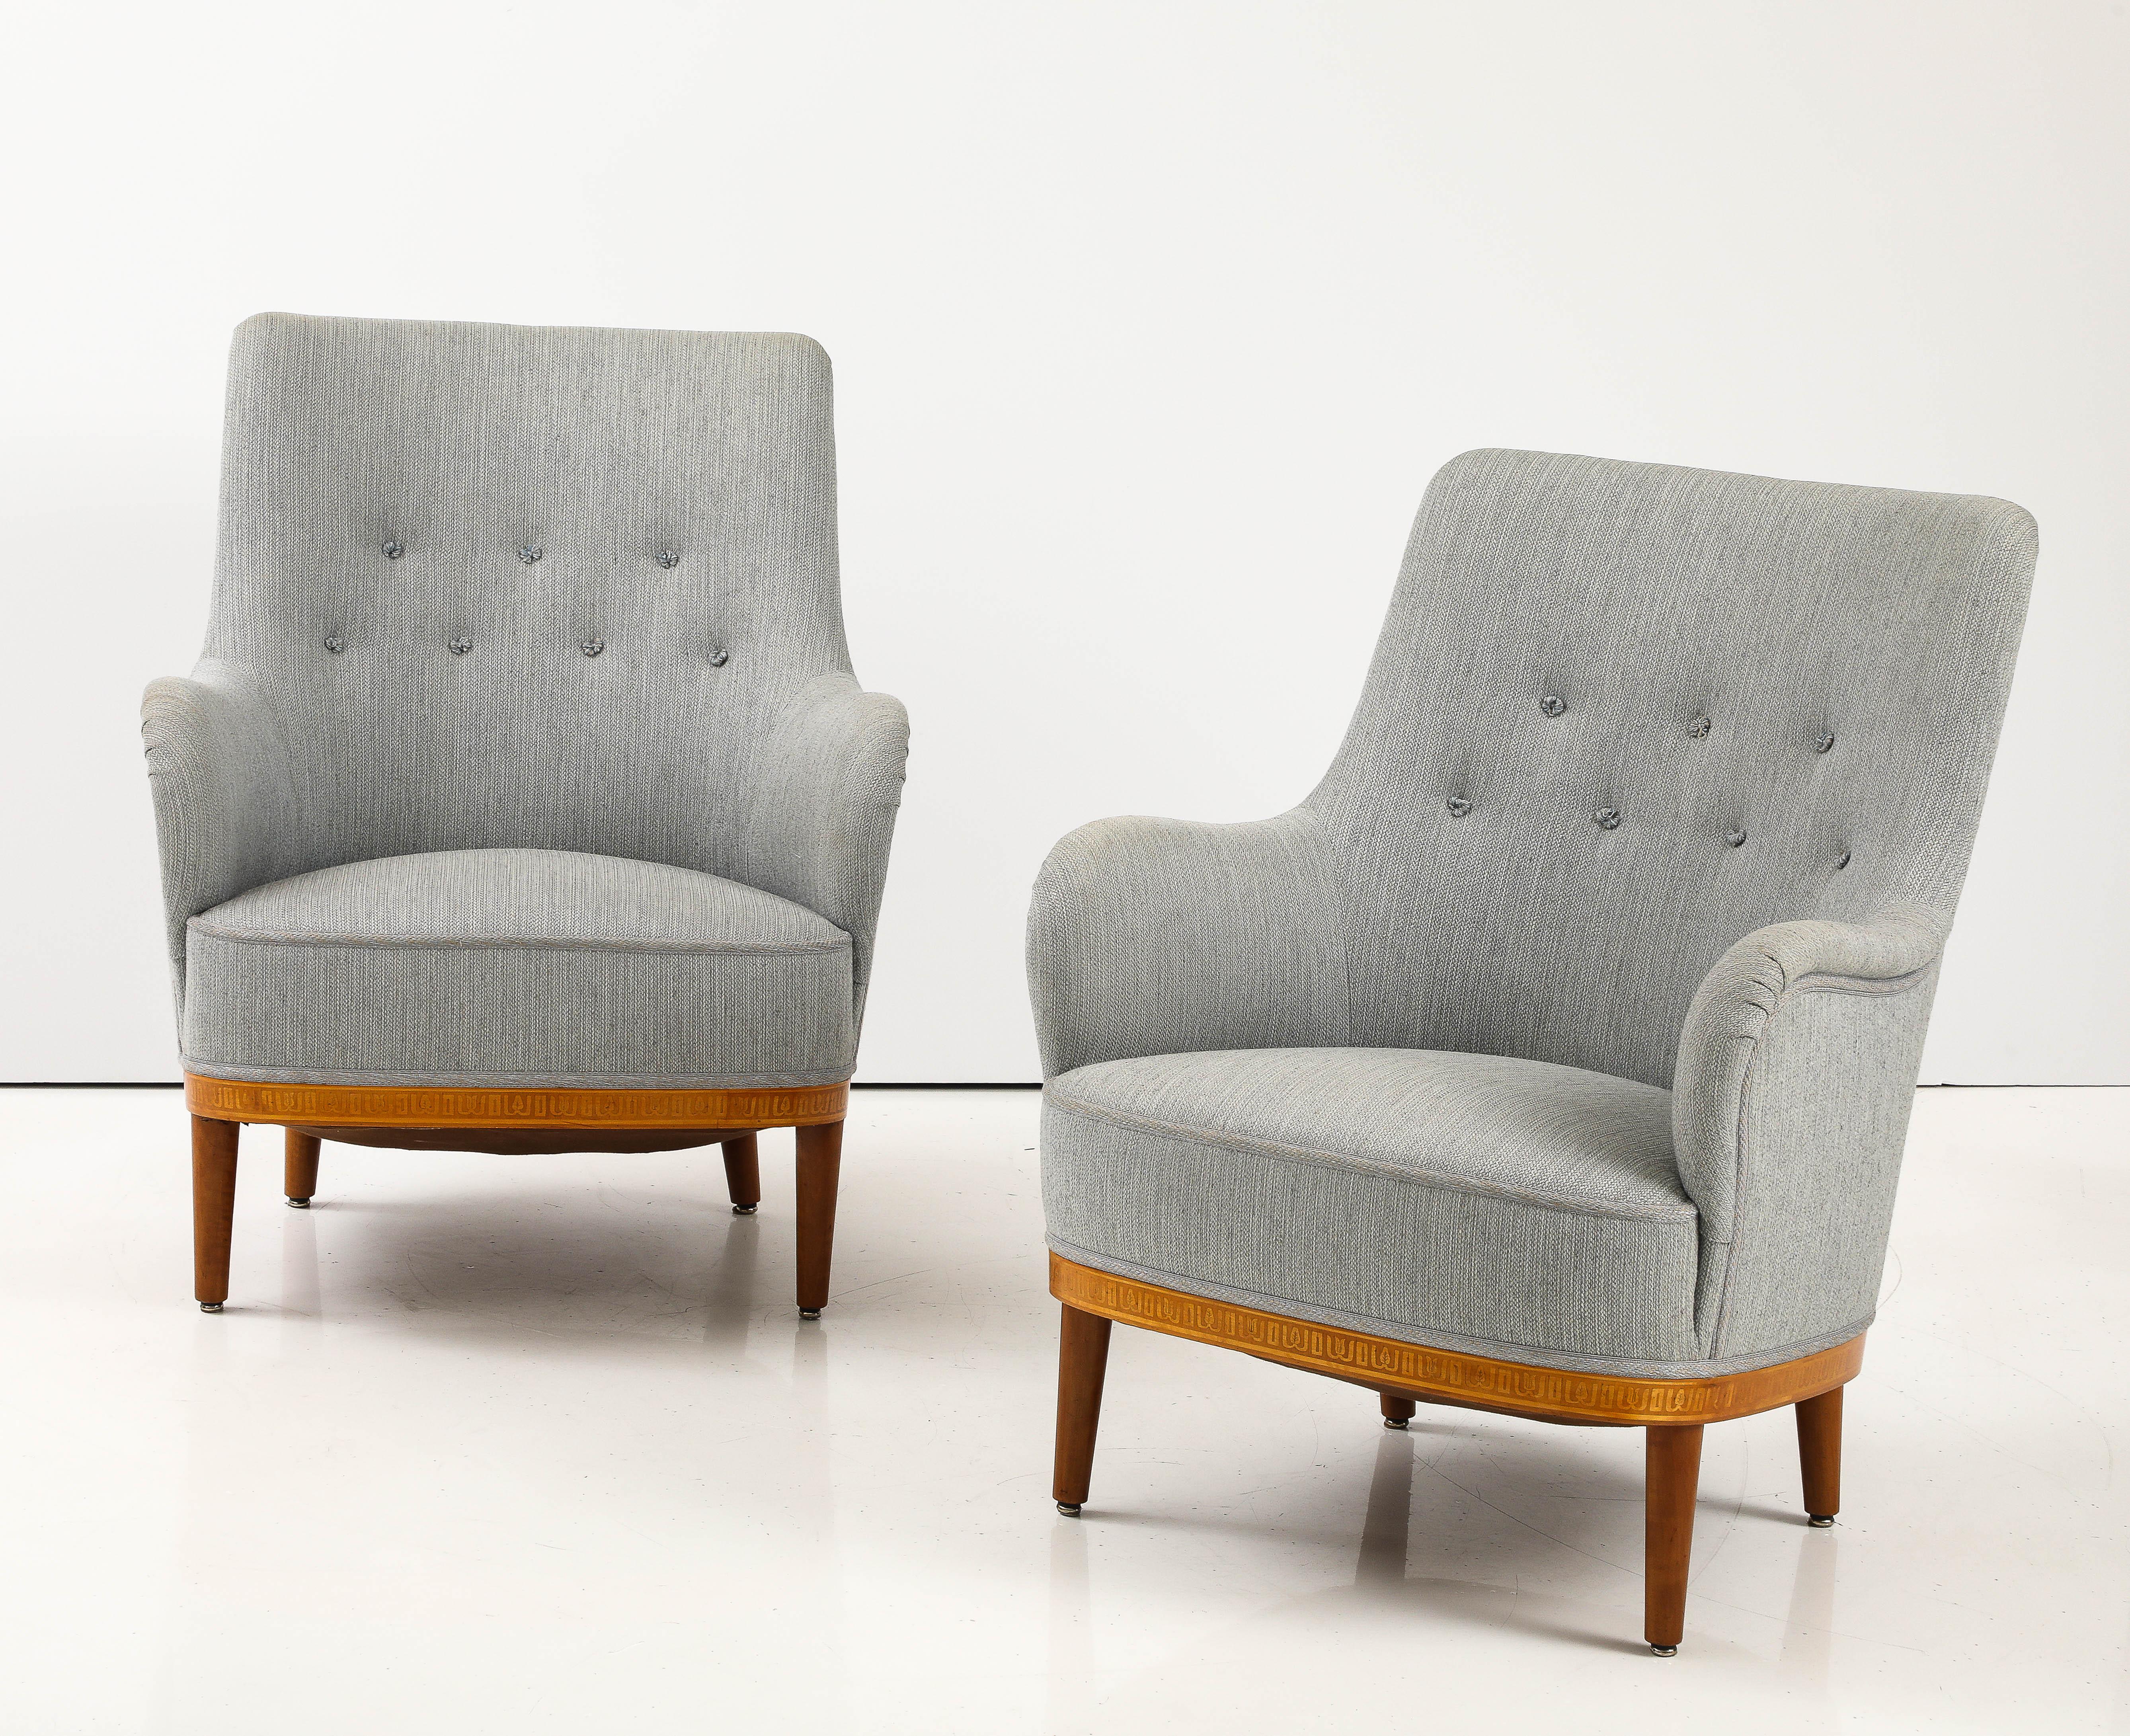 Paire de fauteuils suédois Carl Malmsten en bouleau et acajou, vers les années 1940, avec assise et dossier rembourrés incurvés, frise en marqueterie de bois fruitier d'inspiration néoclassique, reposant sur des pieds circulaires tournés et fuselés.